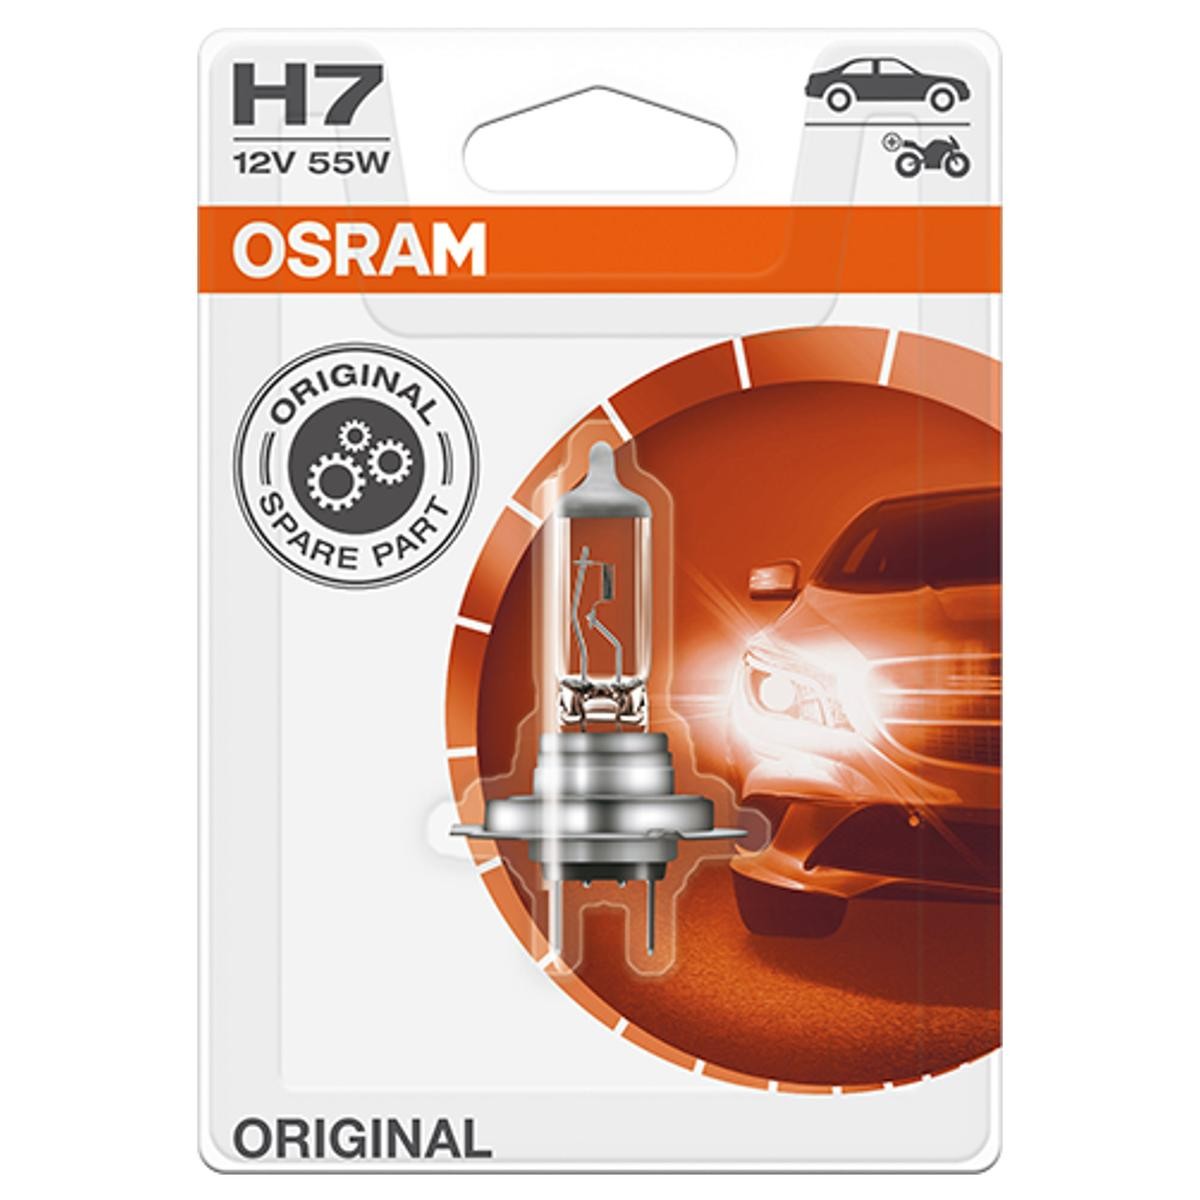 OSRAM 64210-01B Nebelscheinwerfer Birne H7 12V 55W3200K Halogen BMW in Original Qualität